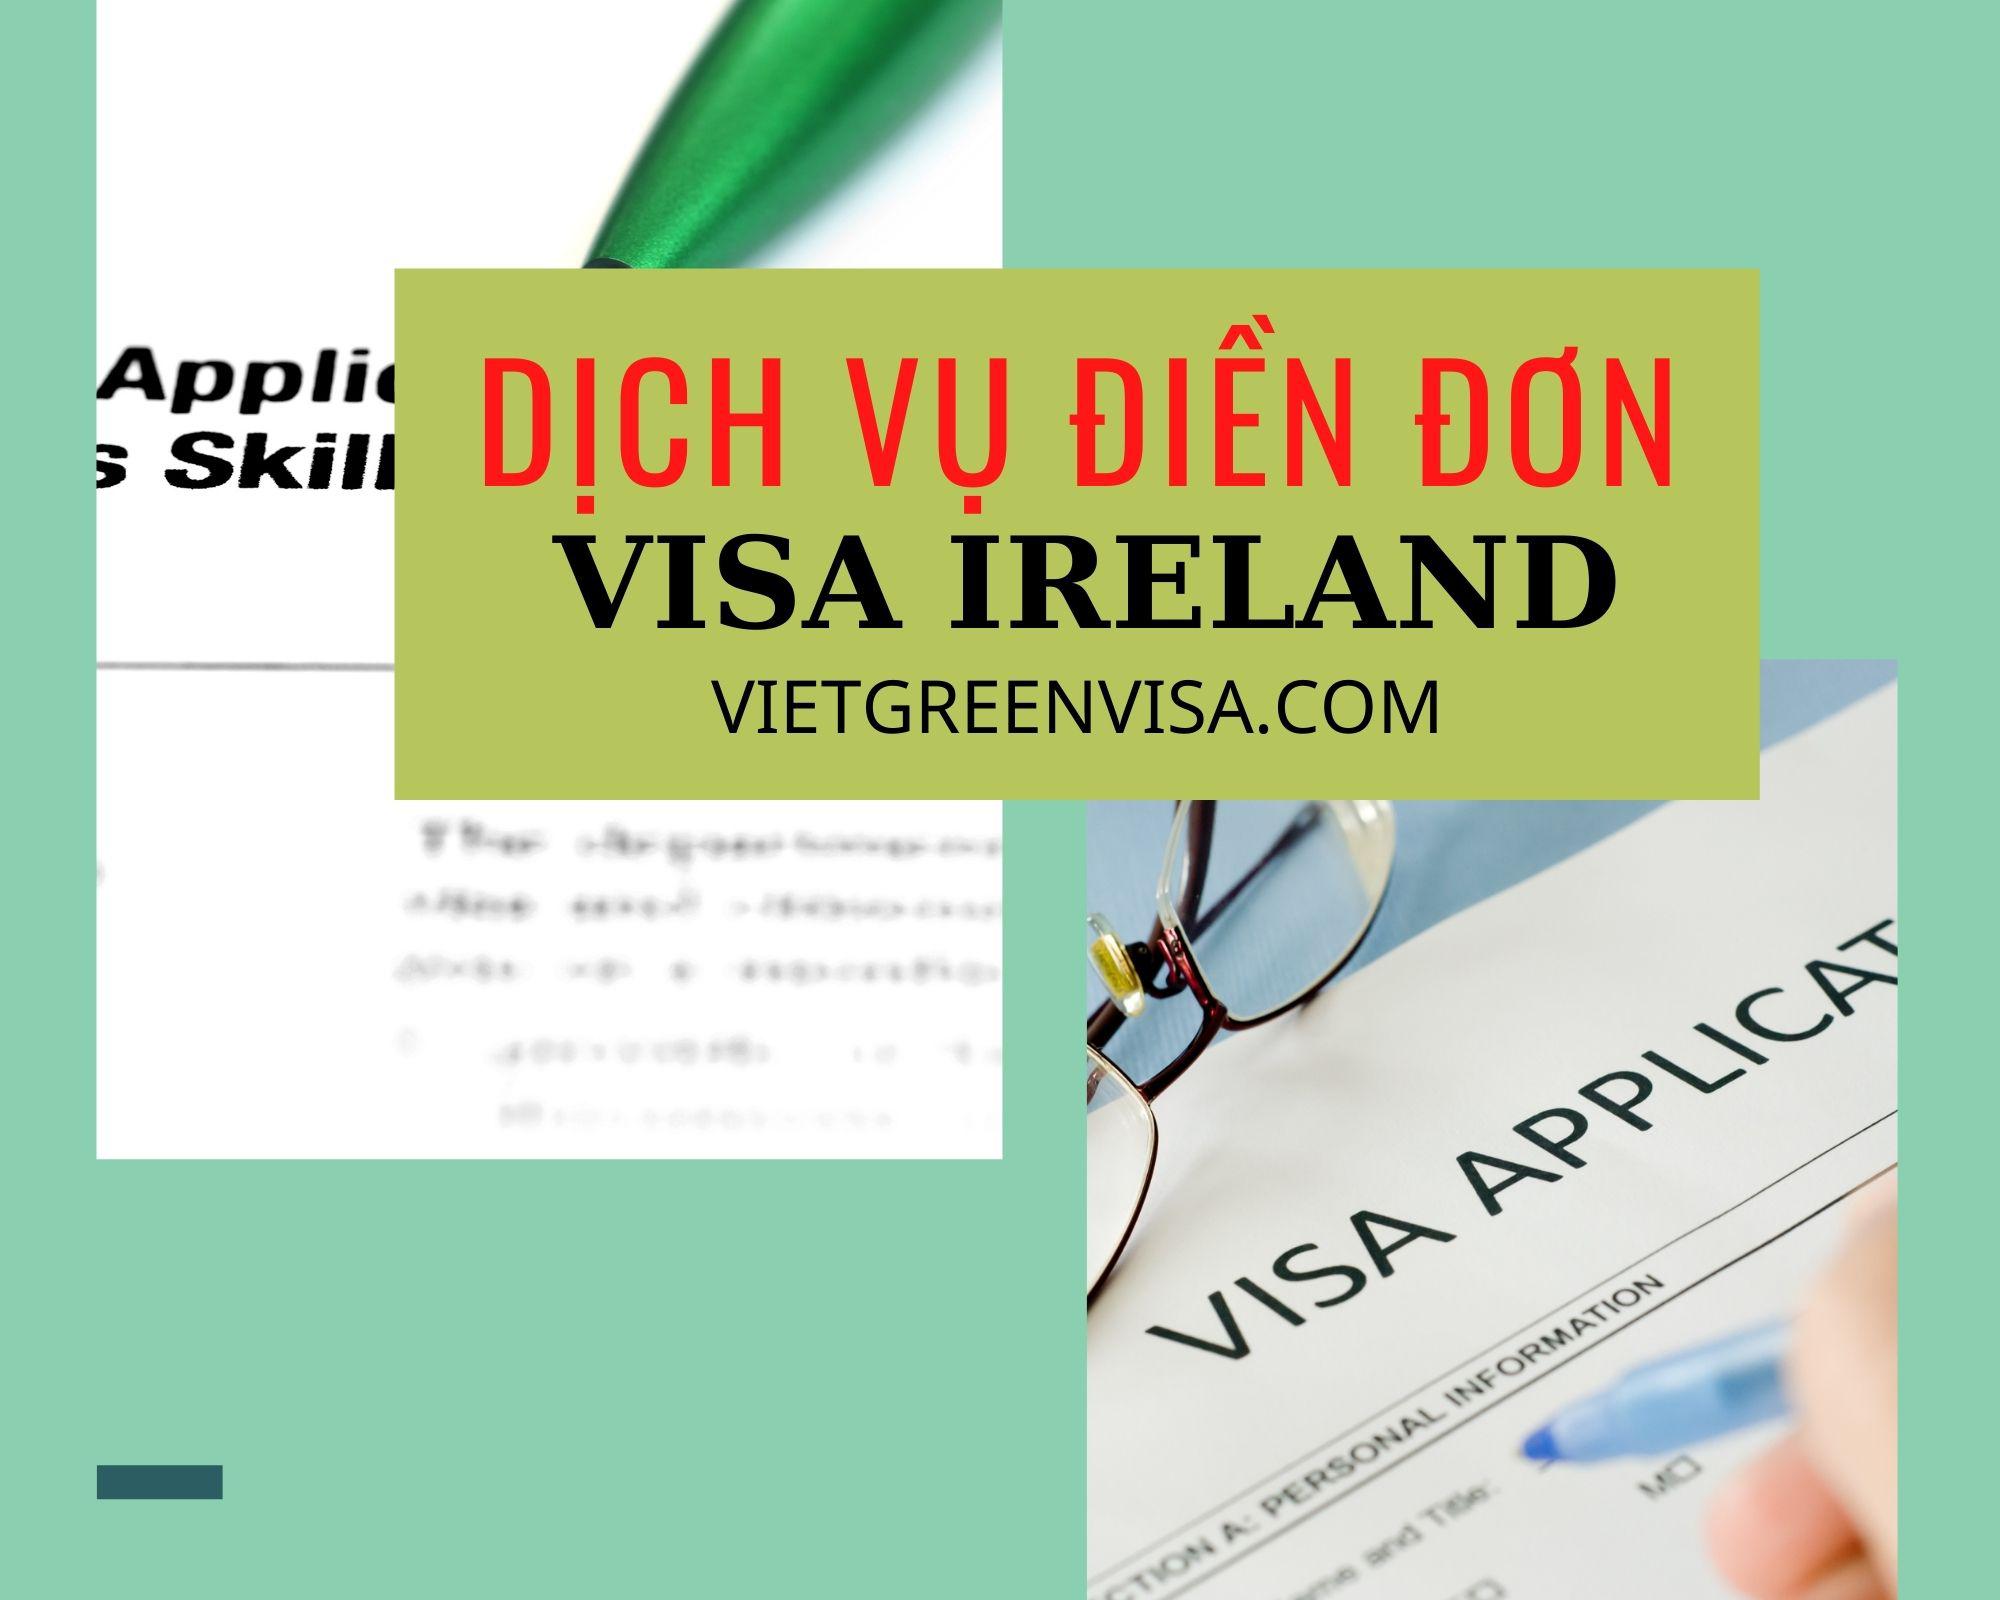 Dịch vụ điền đơn visa Ireland online nhanh rẻ